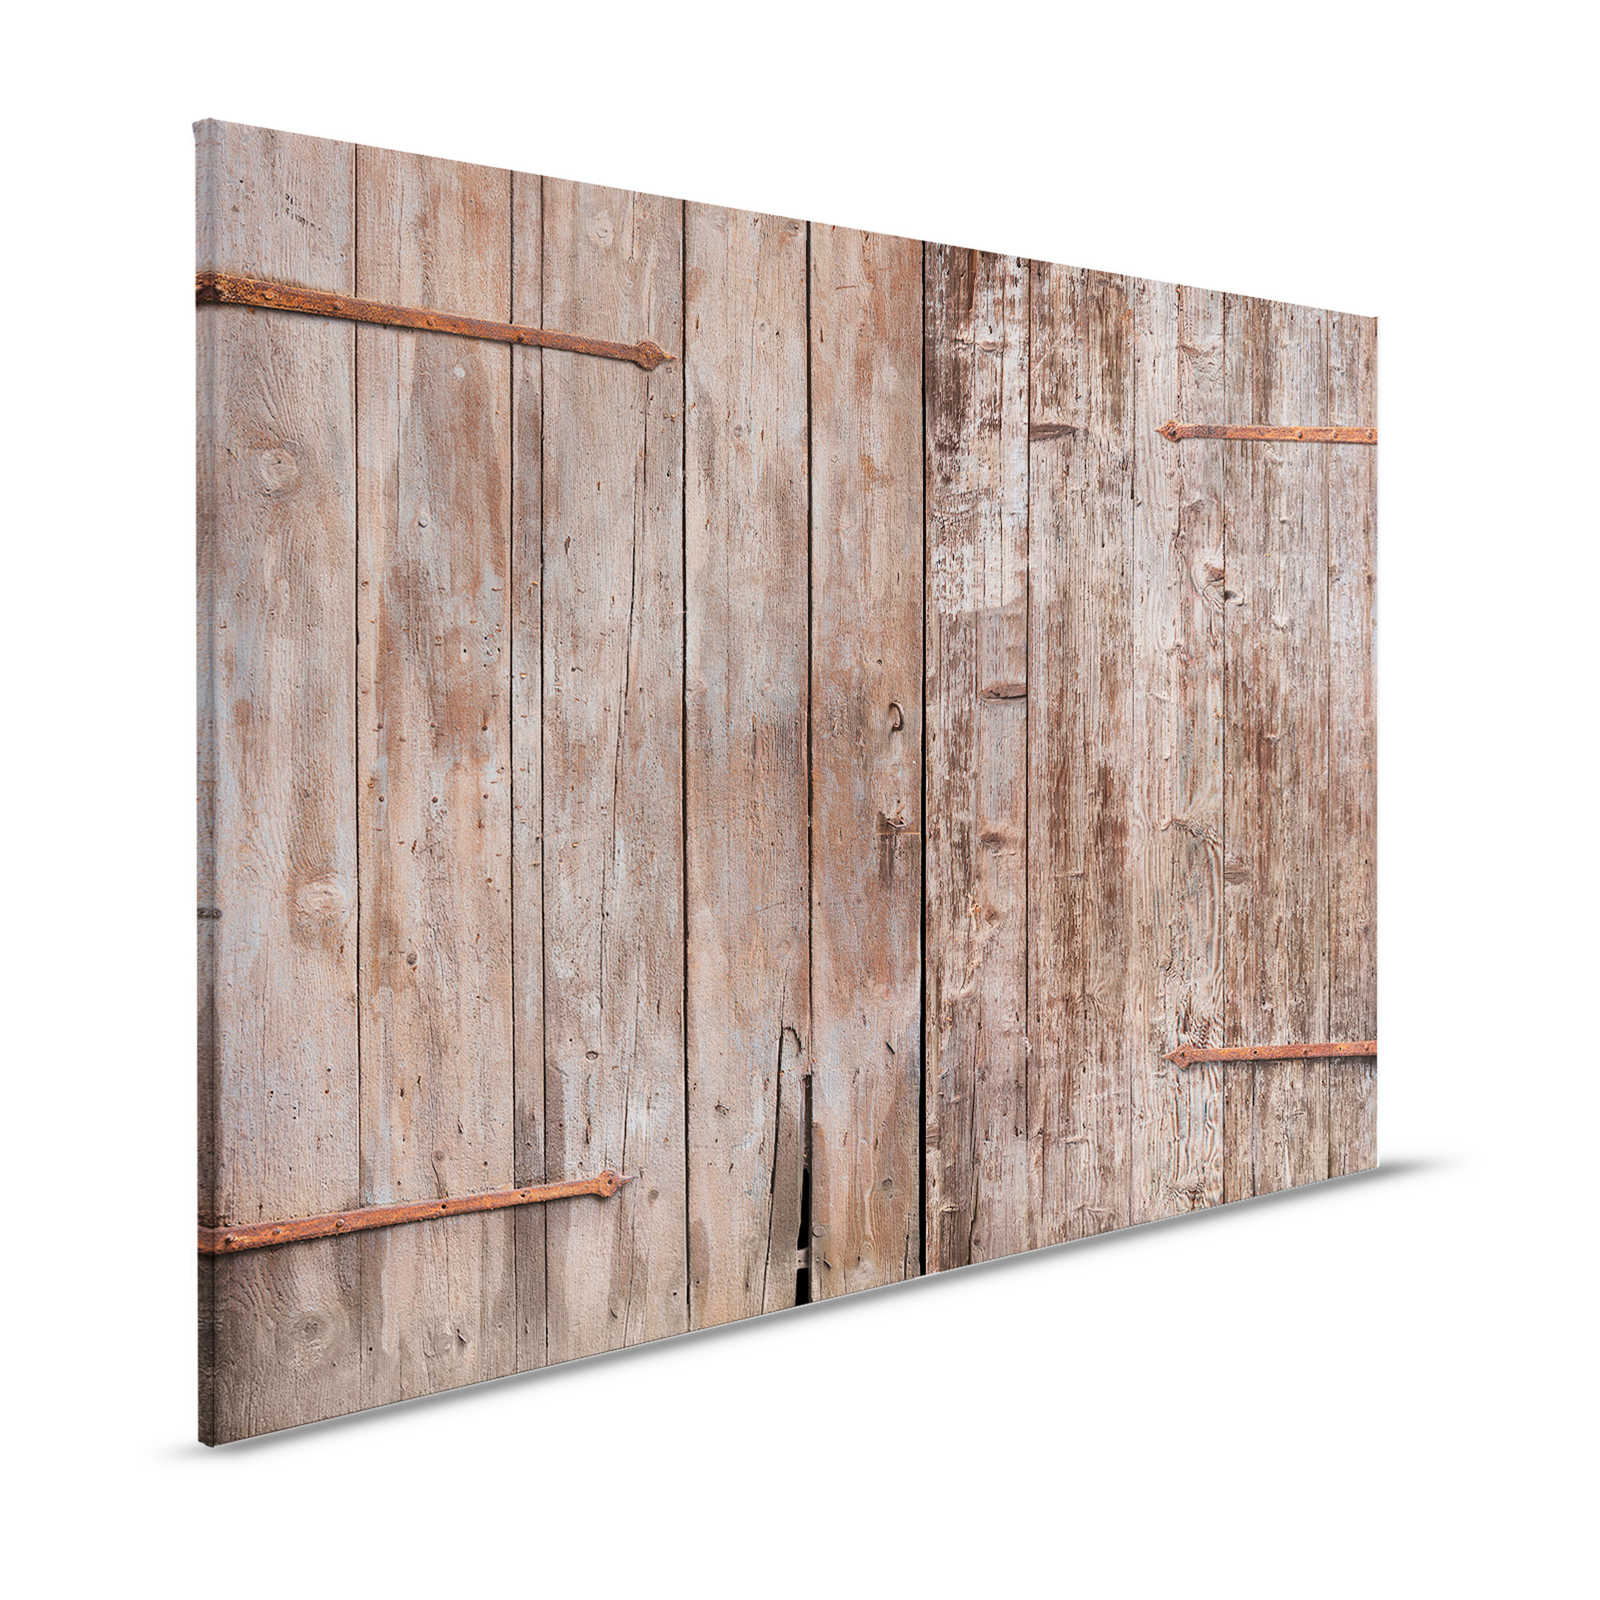 Lienzo de madera Pintura Puerta de Granero Look Usado - 1,20 m x 0,80 m
